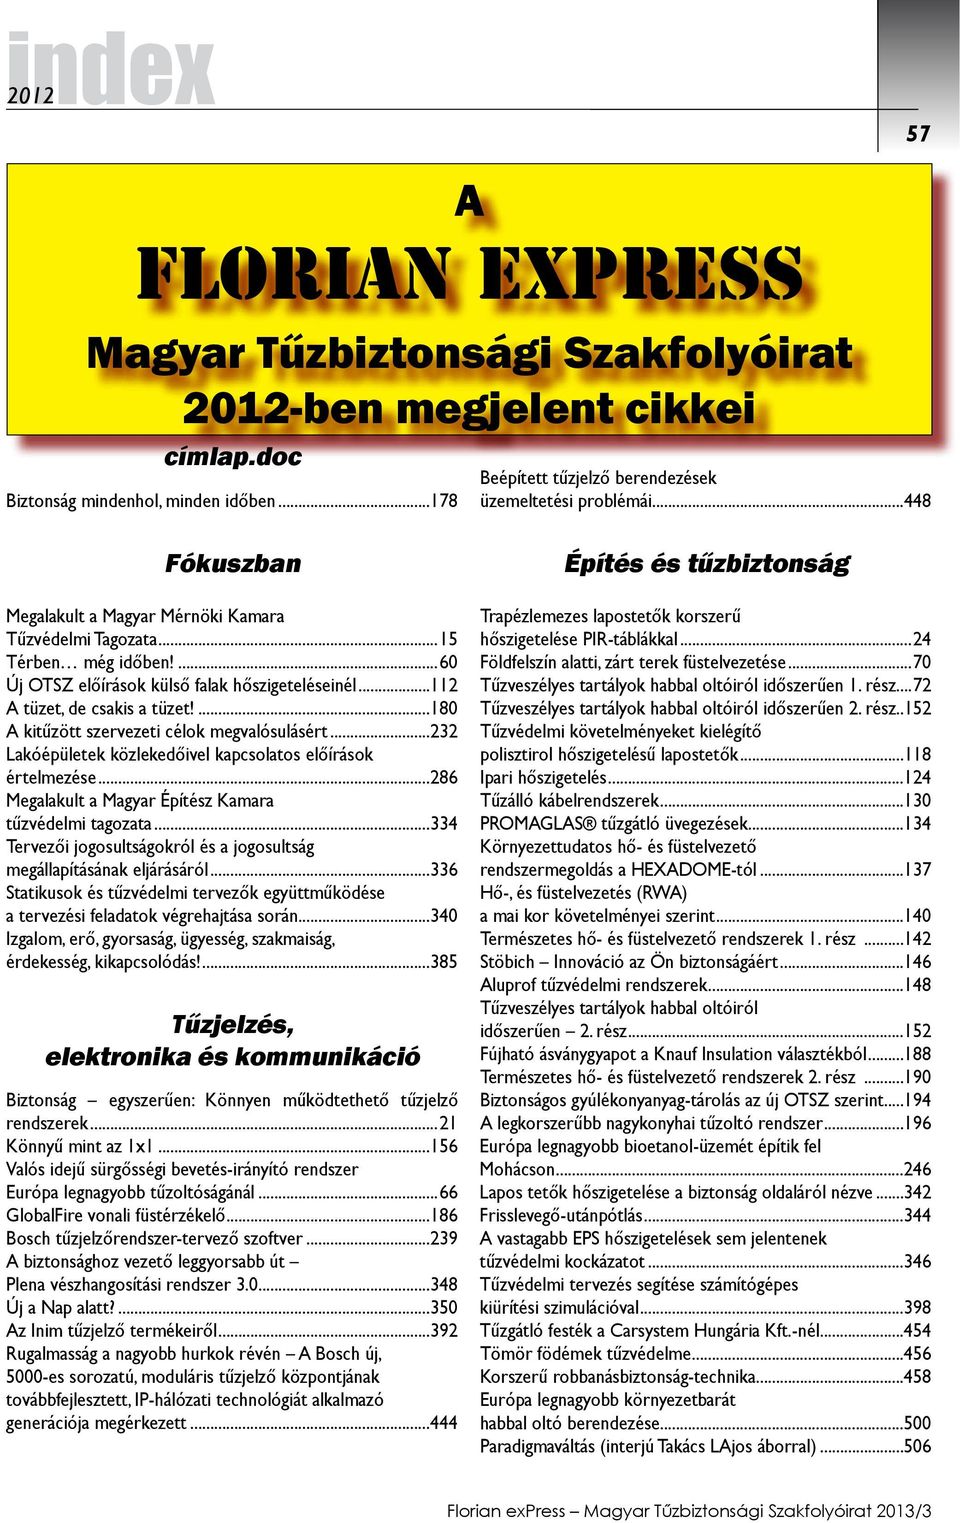 ...180 A kitűzött szervezeti célok megvalósulásért...232 Lakóépületek közlekedőivel kapcsolatos előírások értelmezése...286 Megalakult a Magyar Építész Kamara tűzvédelmi tagozata.